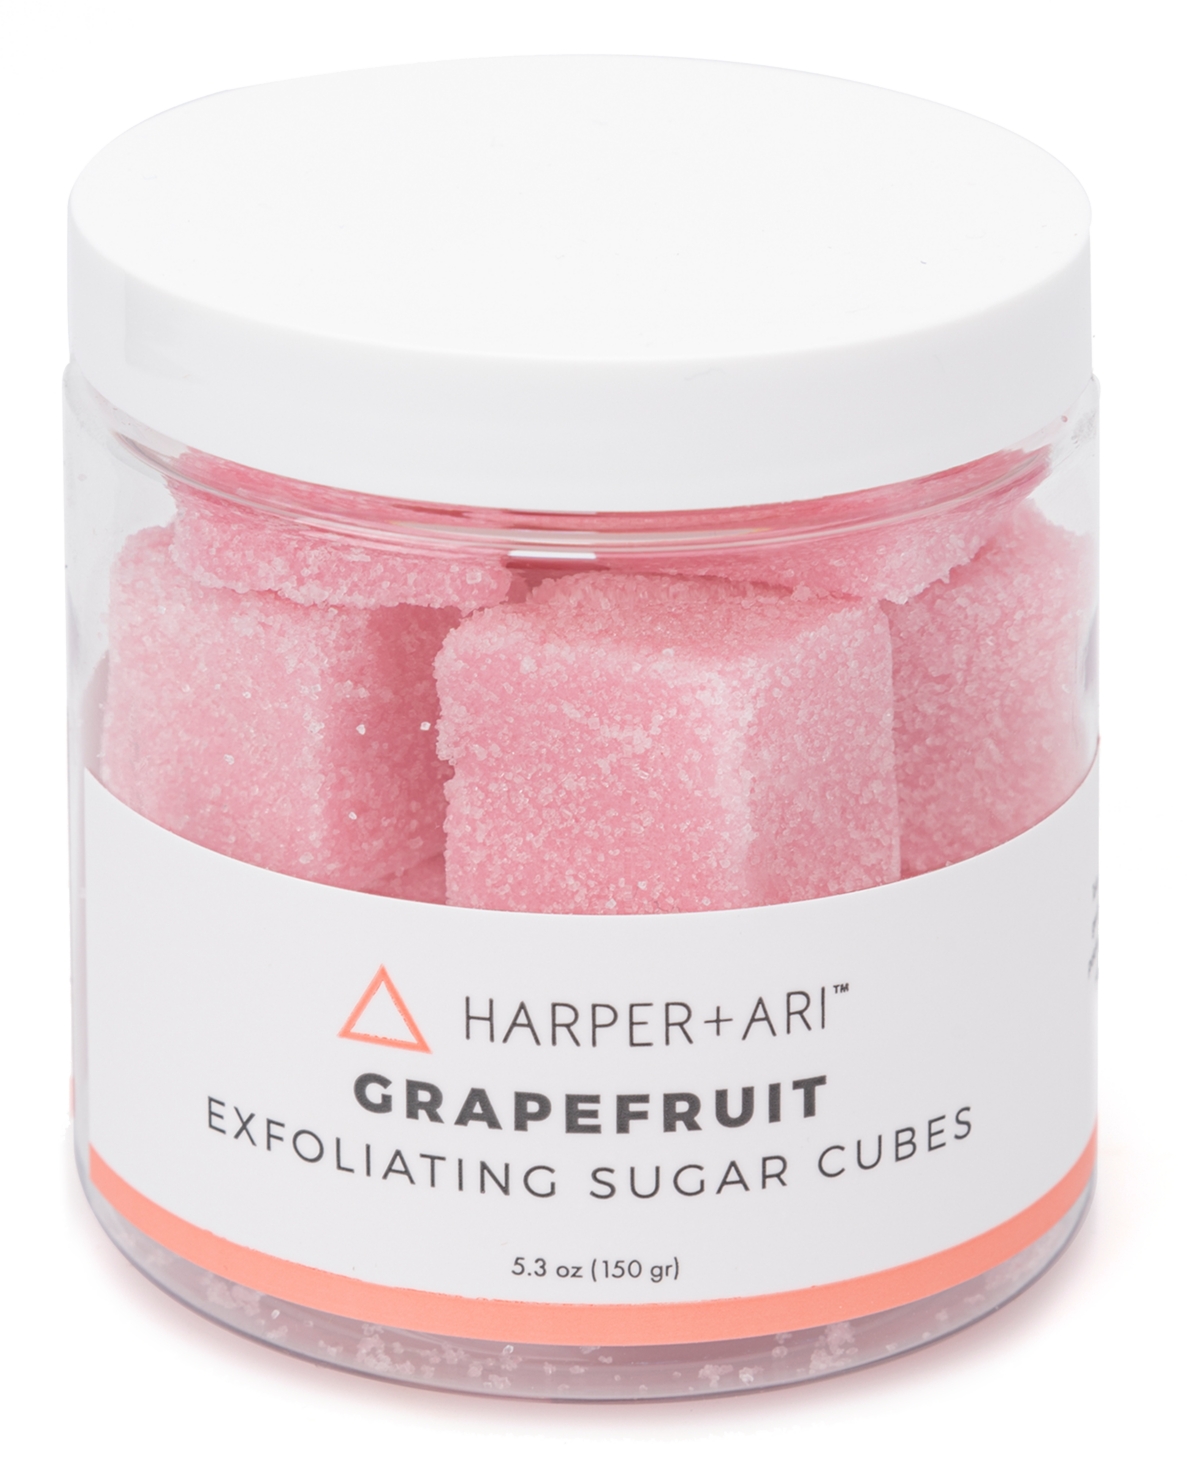 Harper + Ari Grapefruit Exfoliating Sugar Cubes, 5.3-oz.